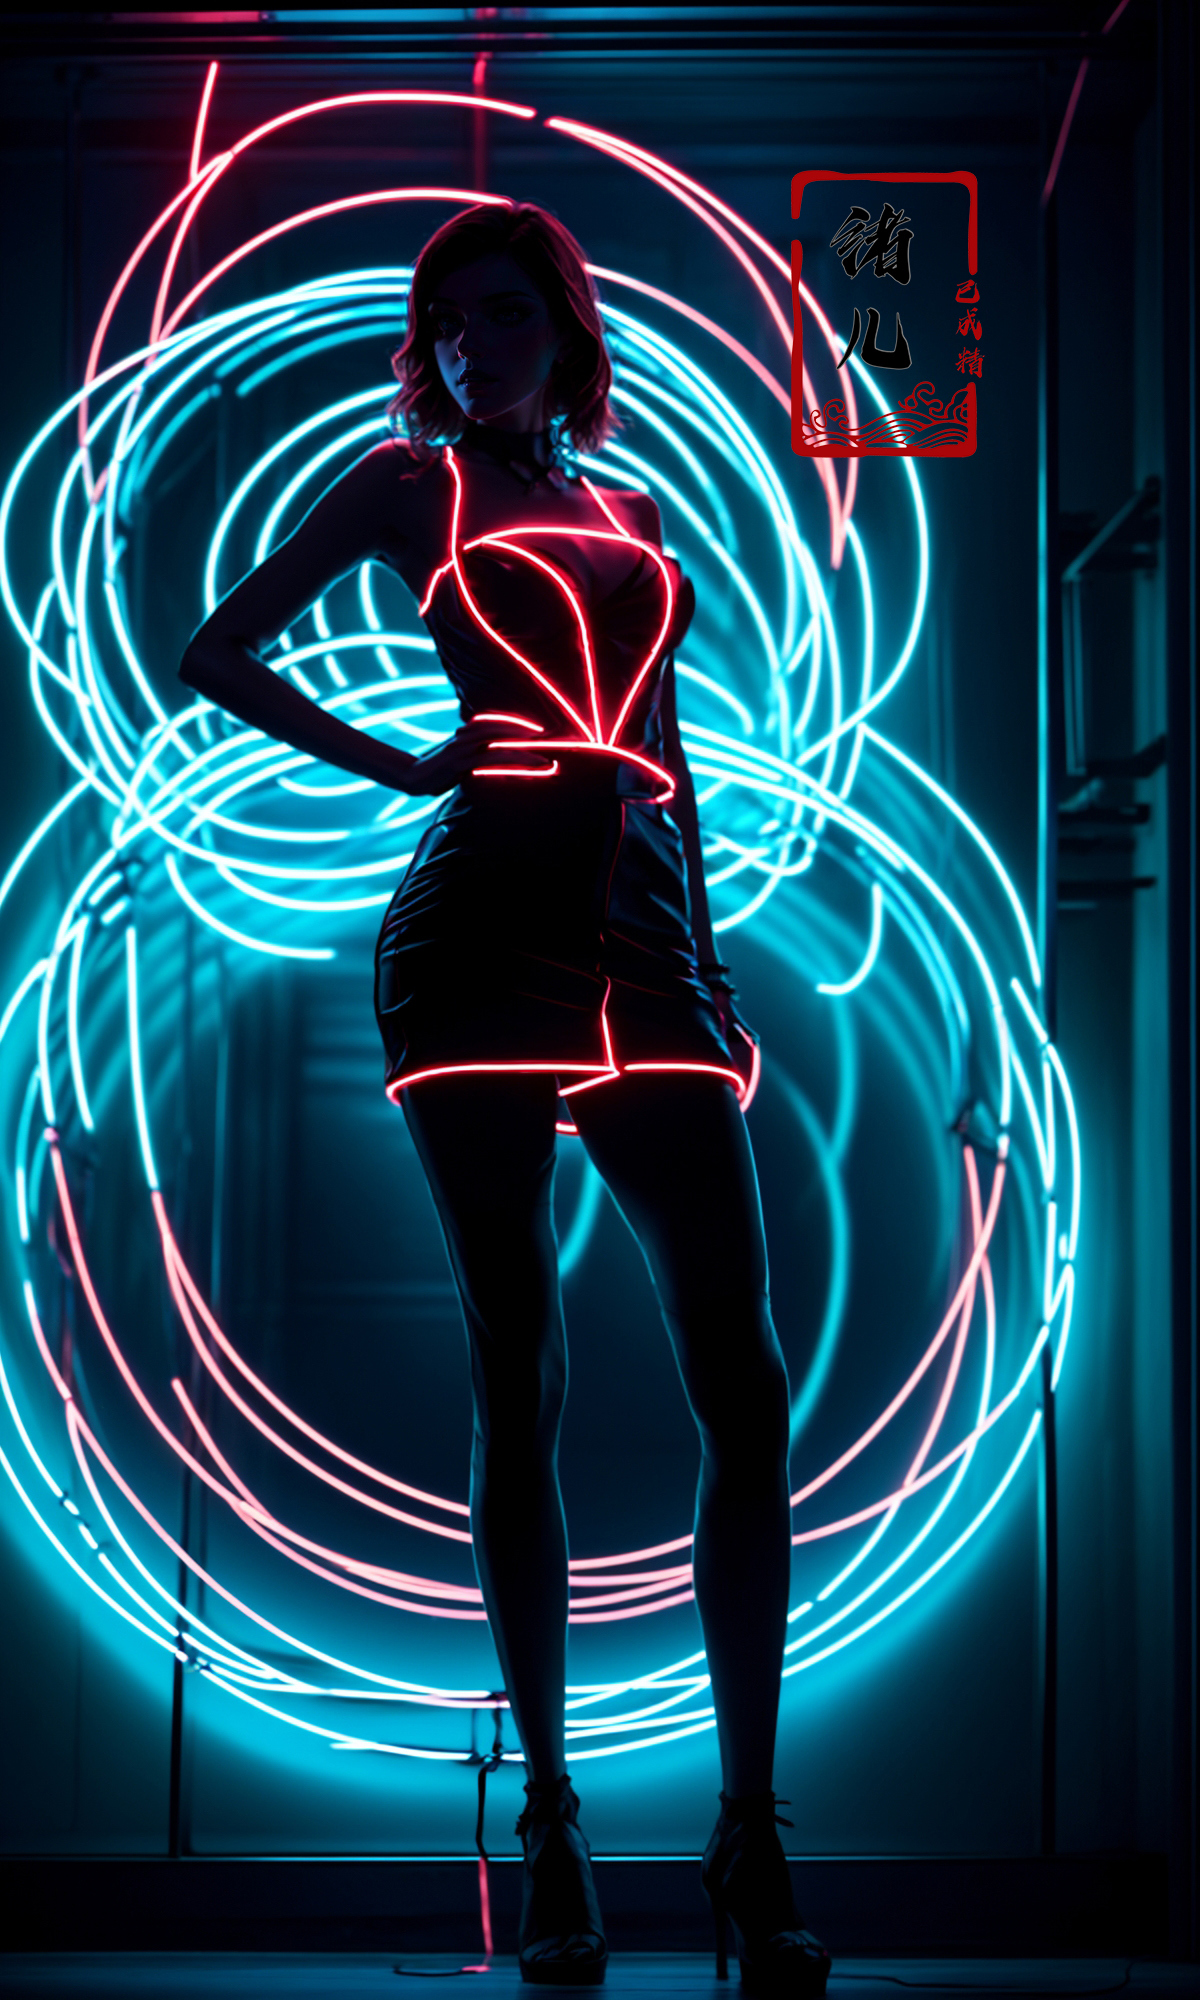 绪儿-霓虹灯光影 Neon light image by XRYCJ